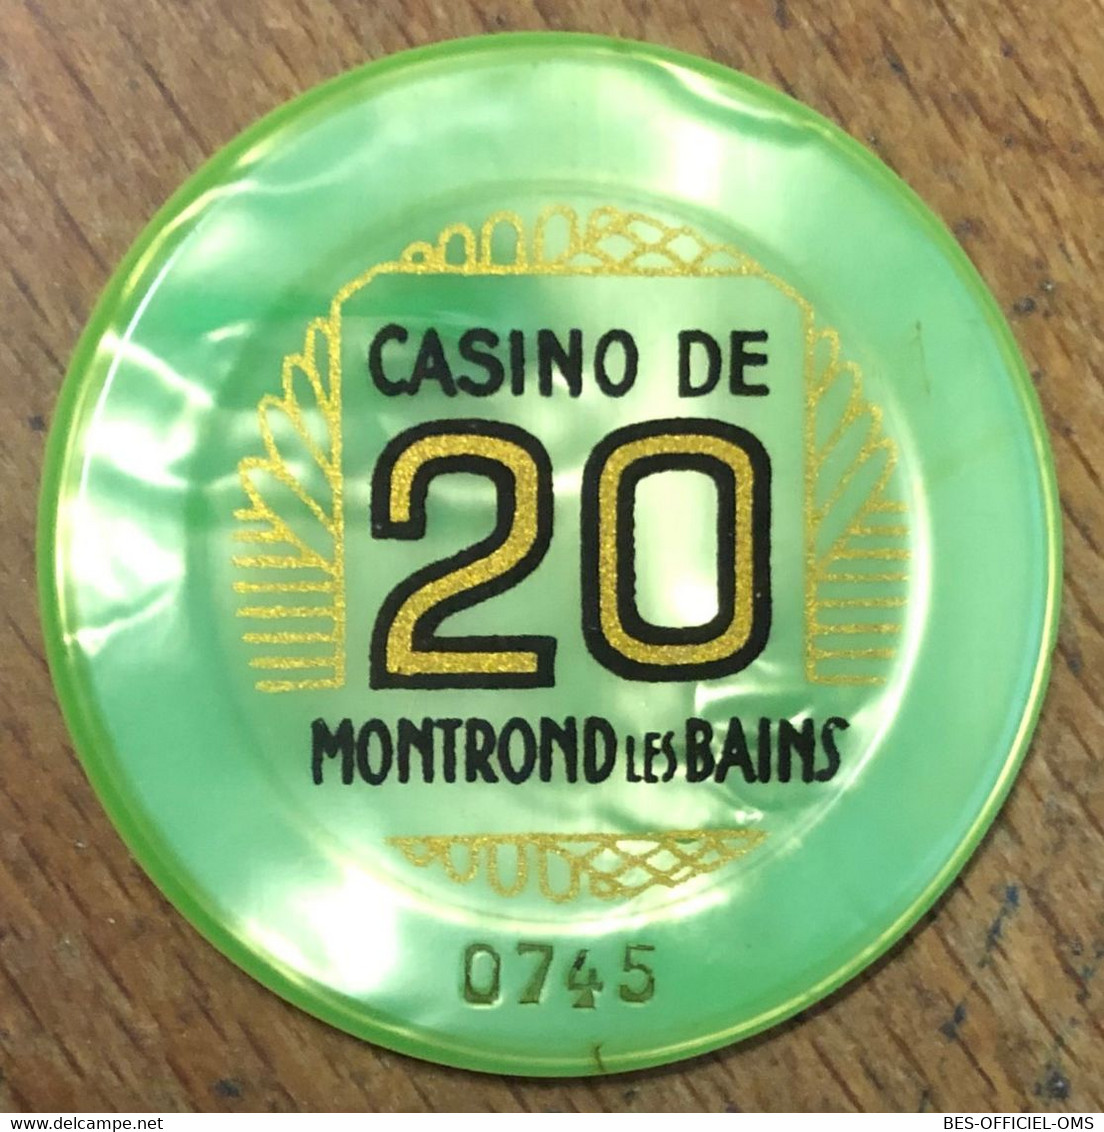 42 CASINO DE MONTROND-LES-BAINS JETON DE 20 FRANCS N° 0745 CHIP COINS TOKENS GAMING - Casino